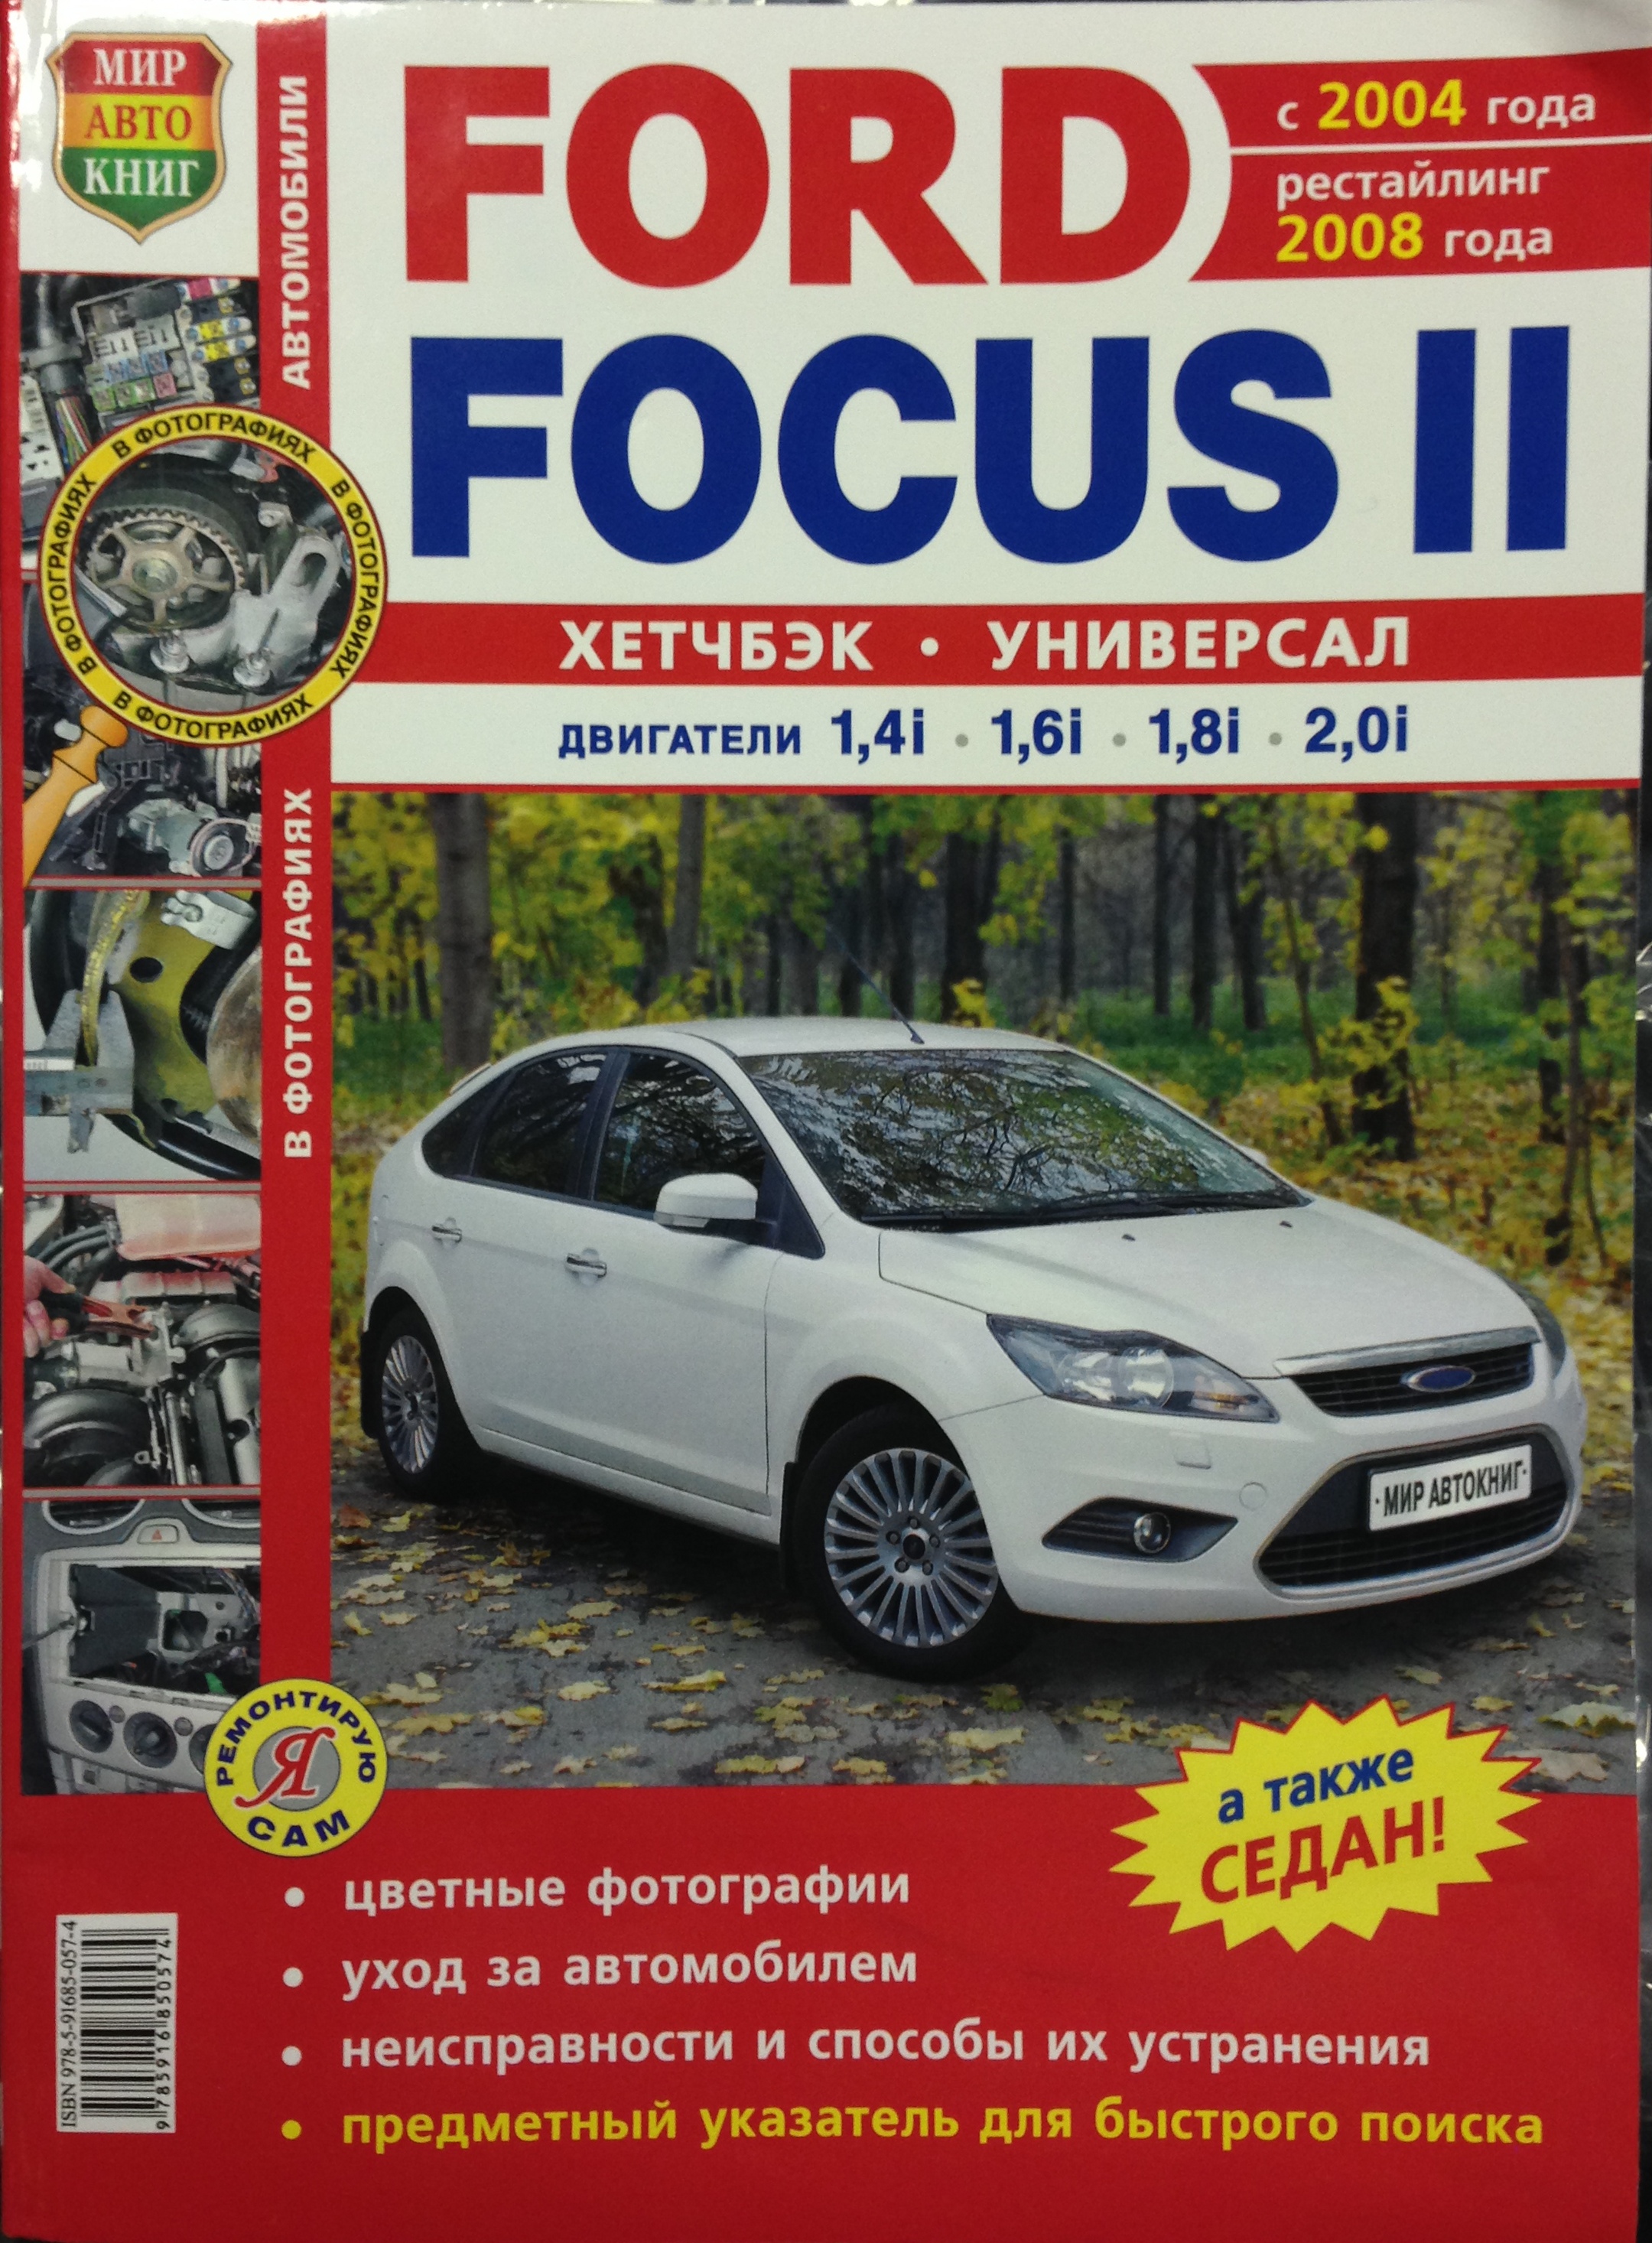 Российский клуб владельцев и любителей Ford Kuga (Форд Куга)